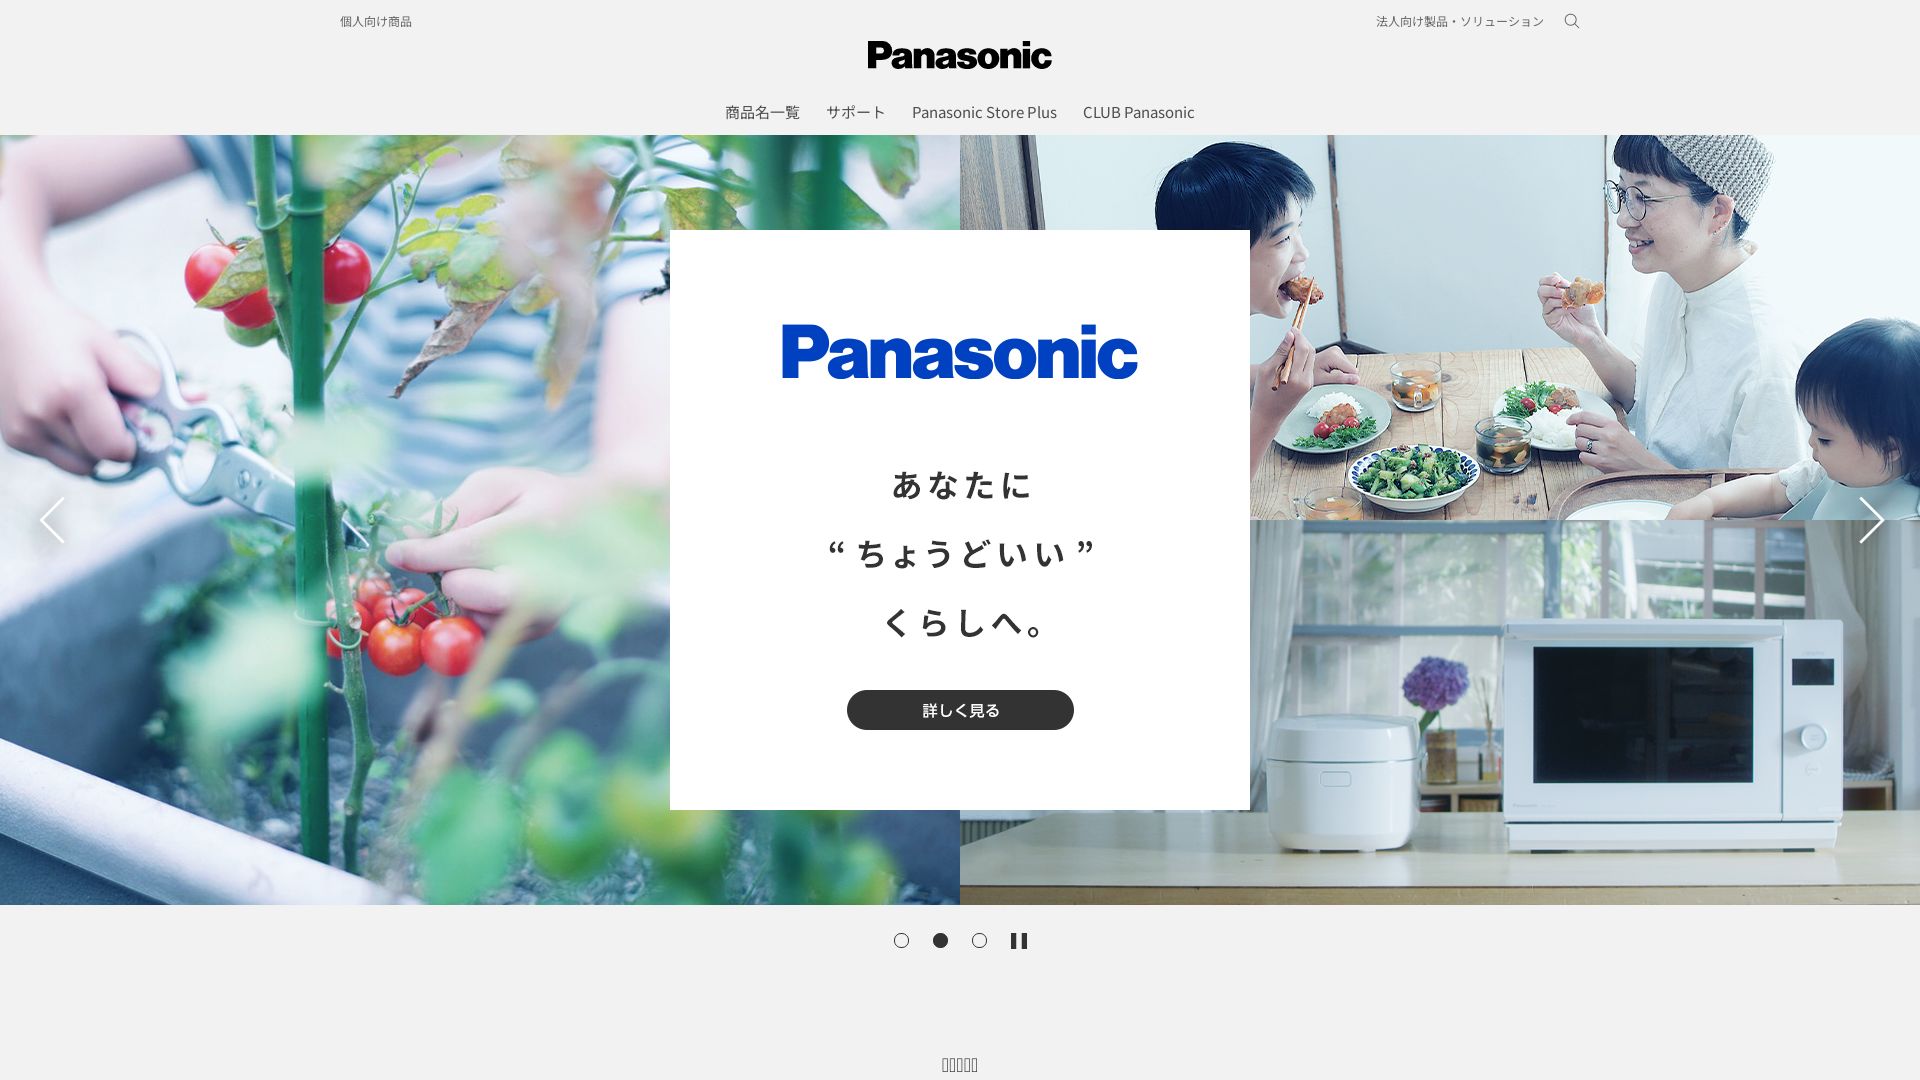 Website status panasonic.jp is   ONLINE